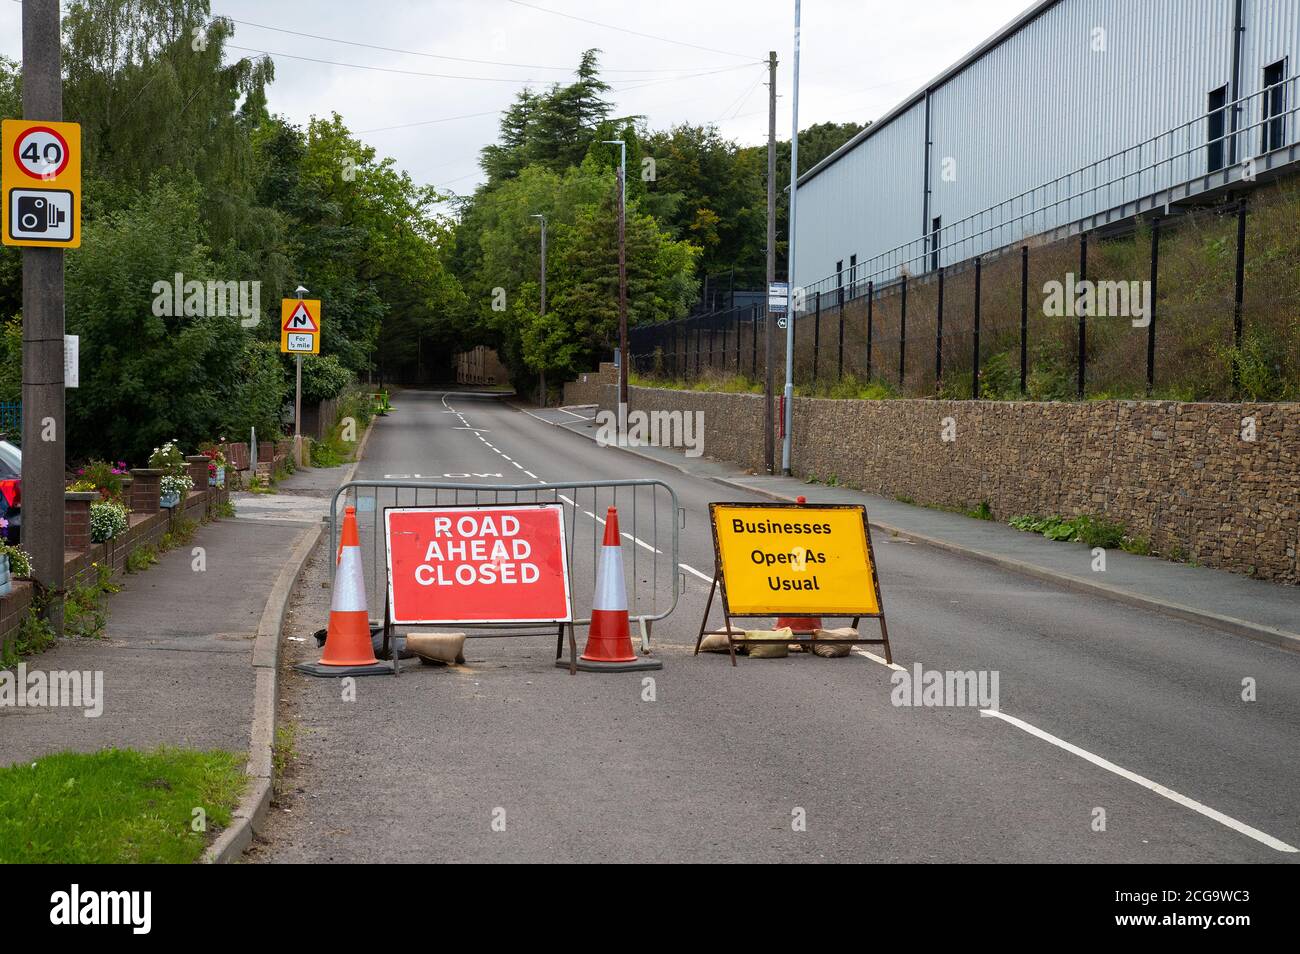 Las señales de la carretera a Eland, West Yorkshire aconsejando que la calle que está delante está cerrada al tráfico, pero las empresas están abiertas como de costumbre Foto de stock